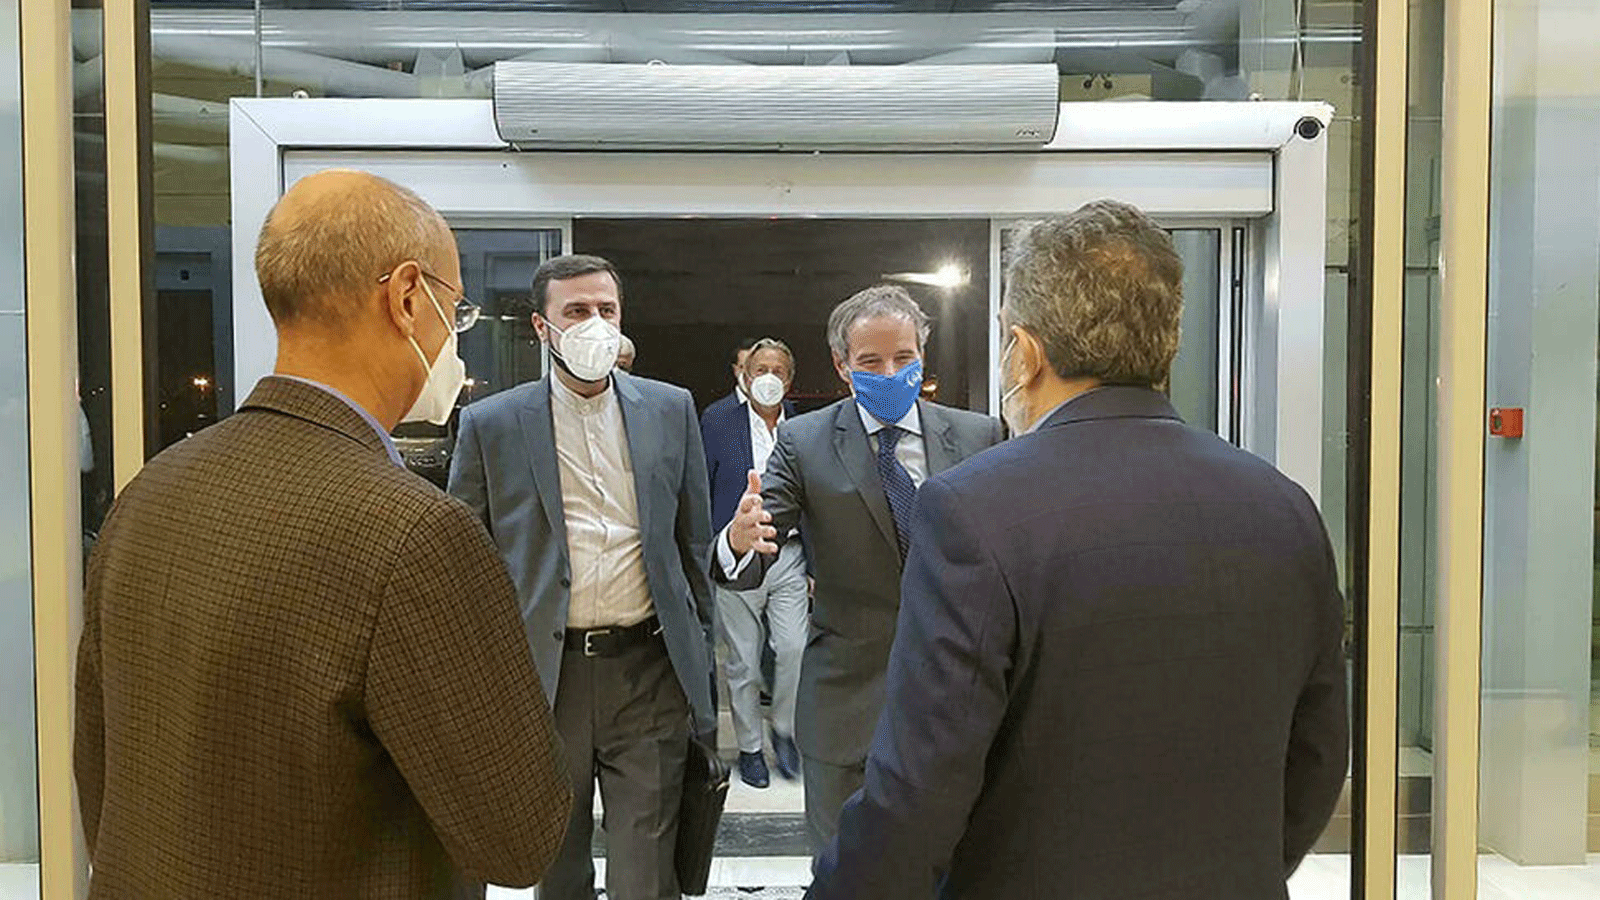 صورة قدمتها منظمة الطاقة الذرية الإيرانية تُظهر استقبال رئيس الوكالة الدولية للطاقة الذرية رافائيل غروسي من قبل المتحدث باسم AEOI بهروز كمالوندي لدى وصوله إلى طهران